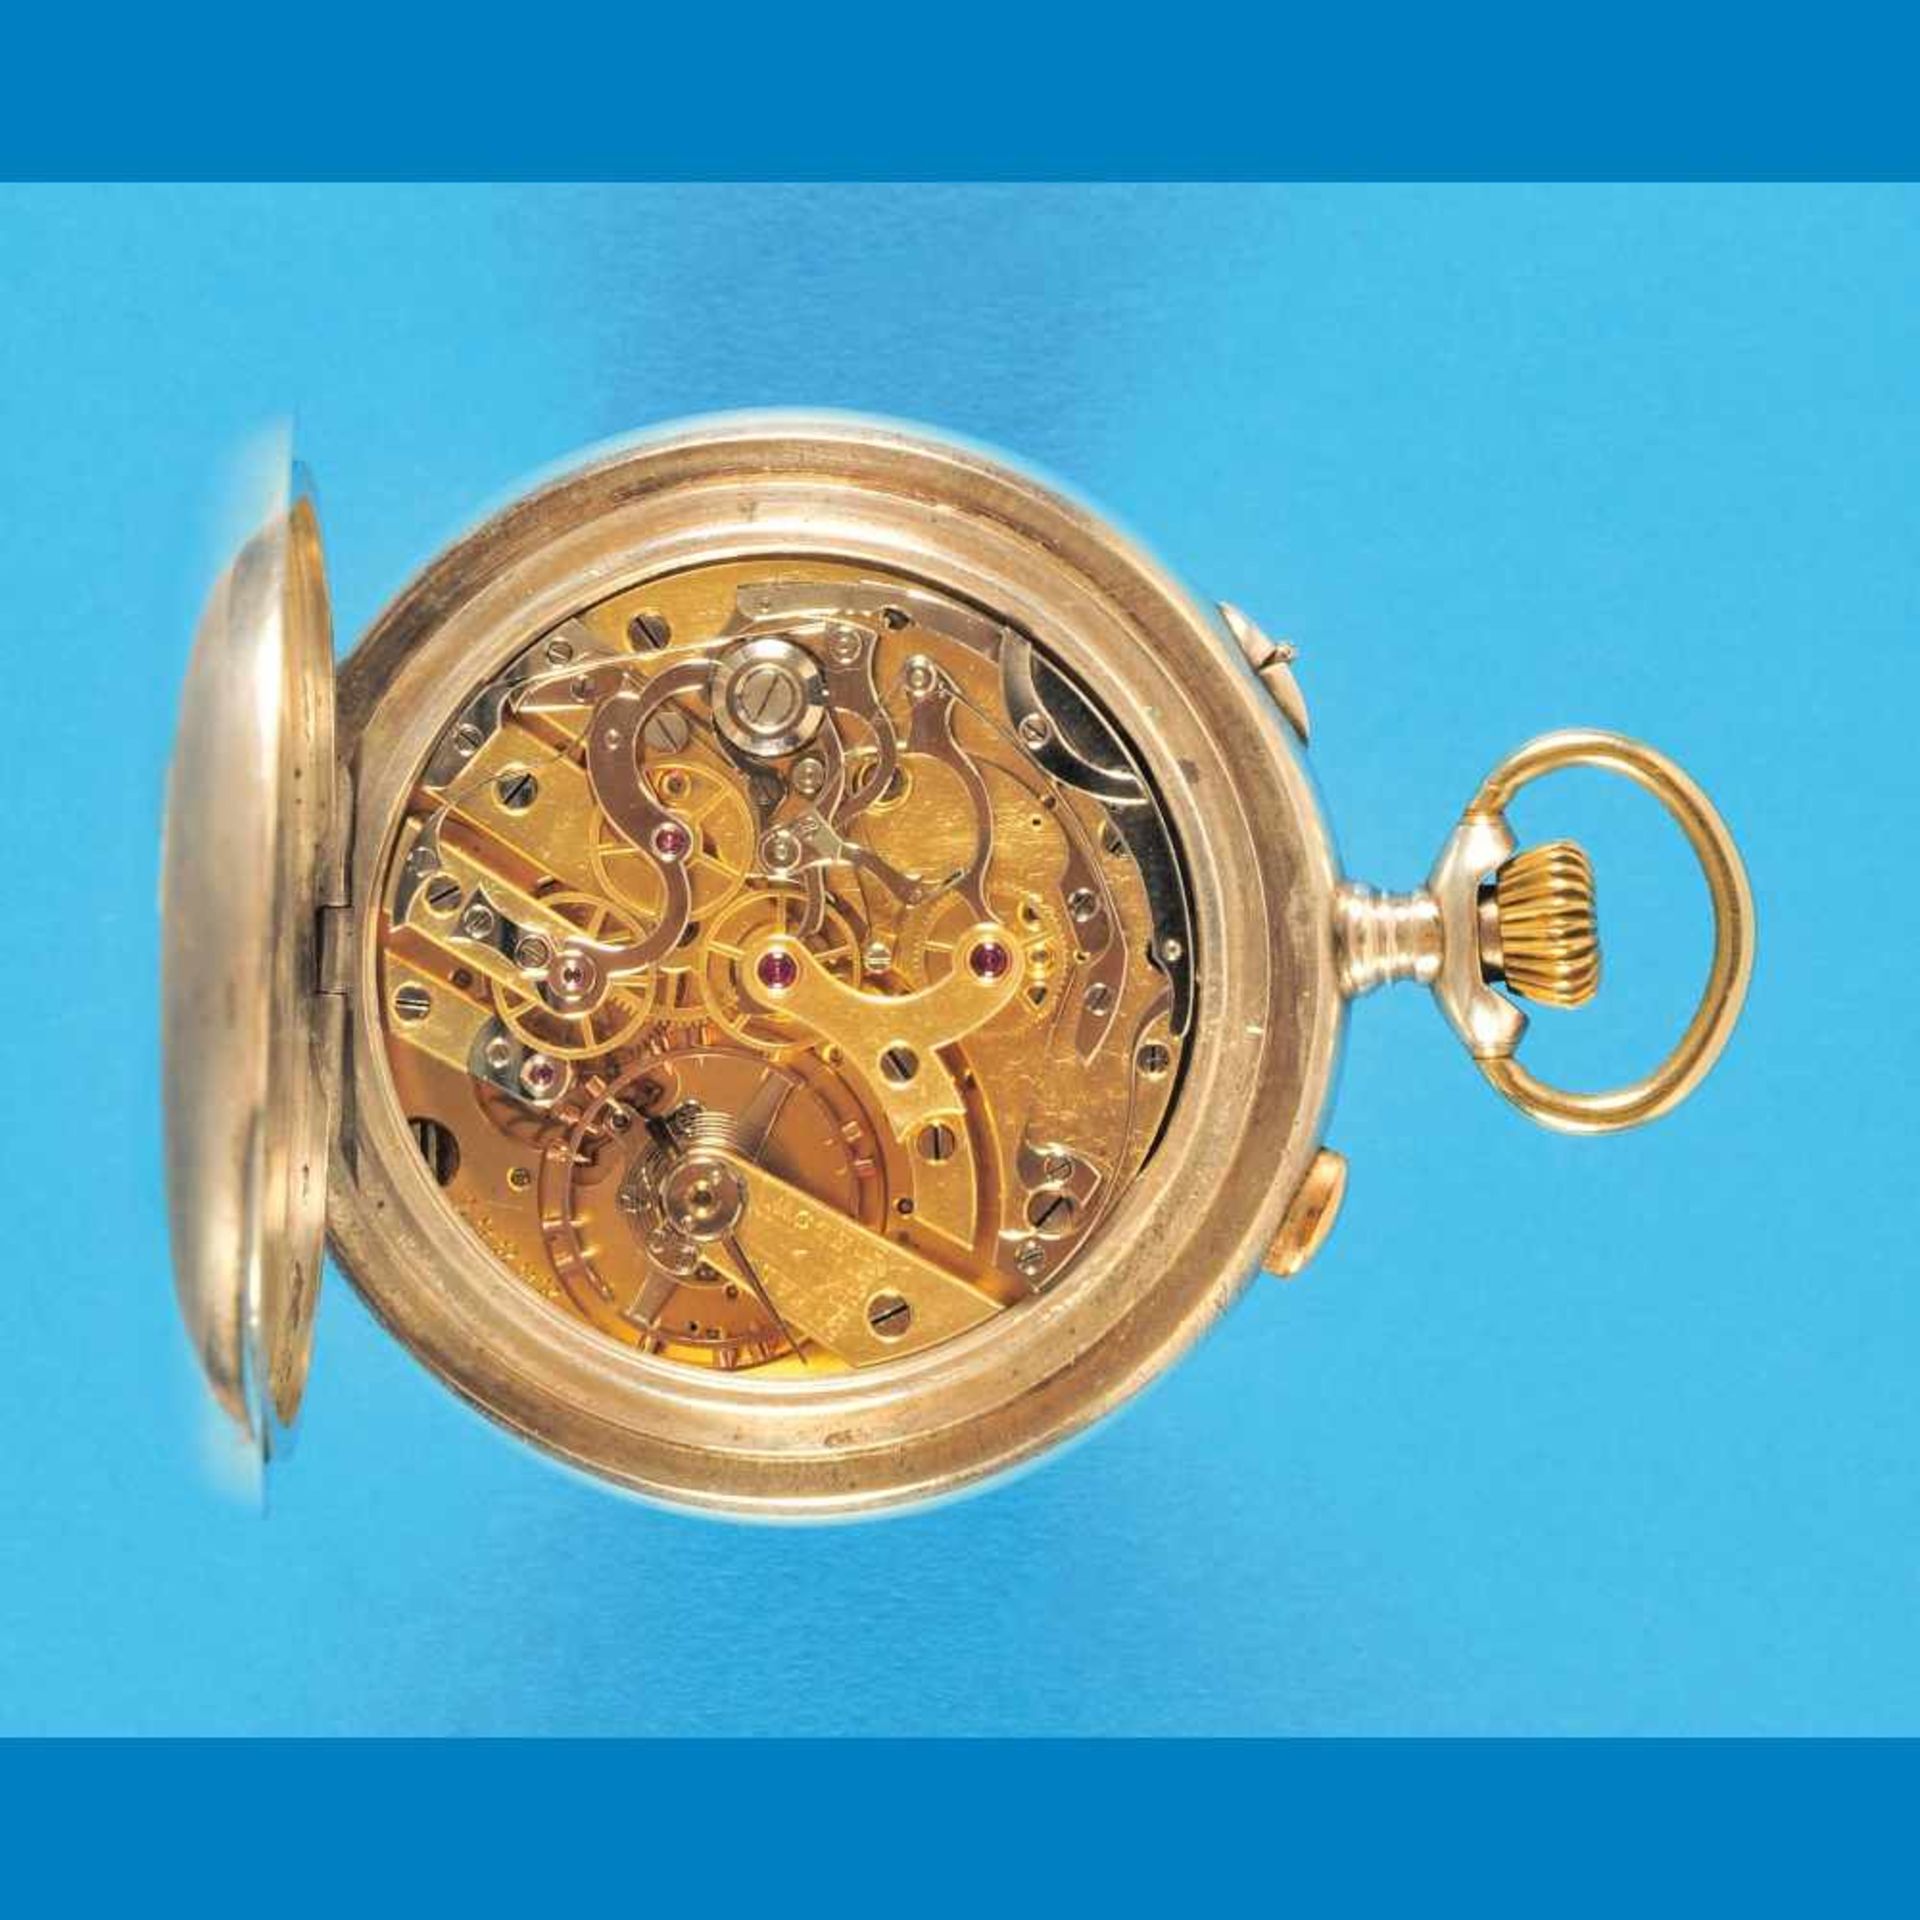 Gig silver pocket watch with chronographGroße Silbertaschenuhr mit Chronograph, Schleppzeig